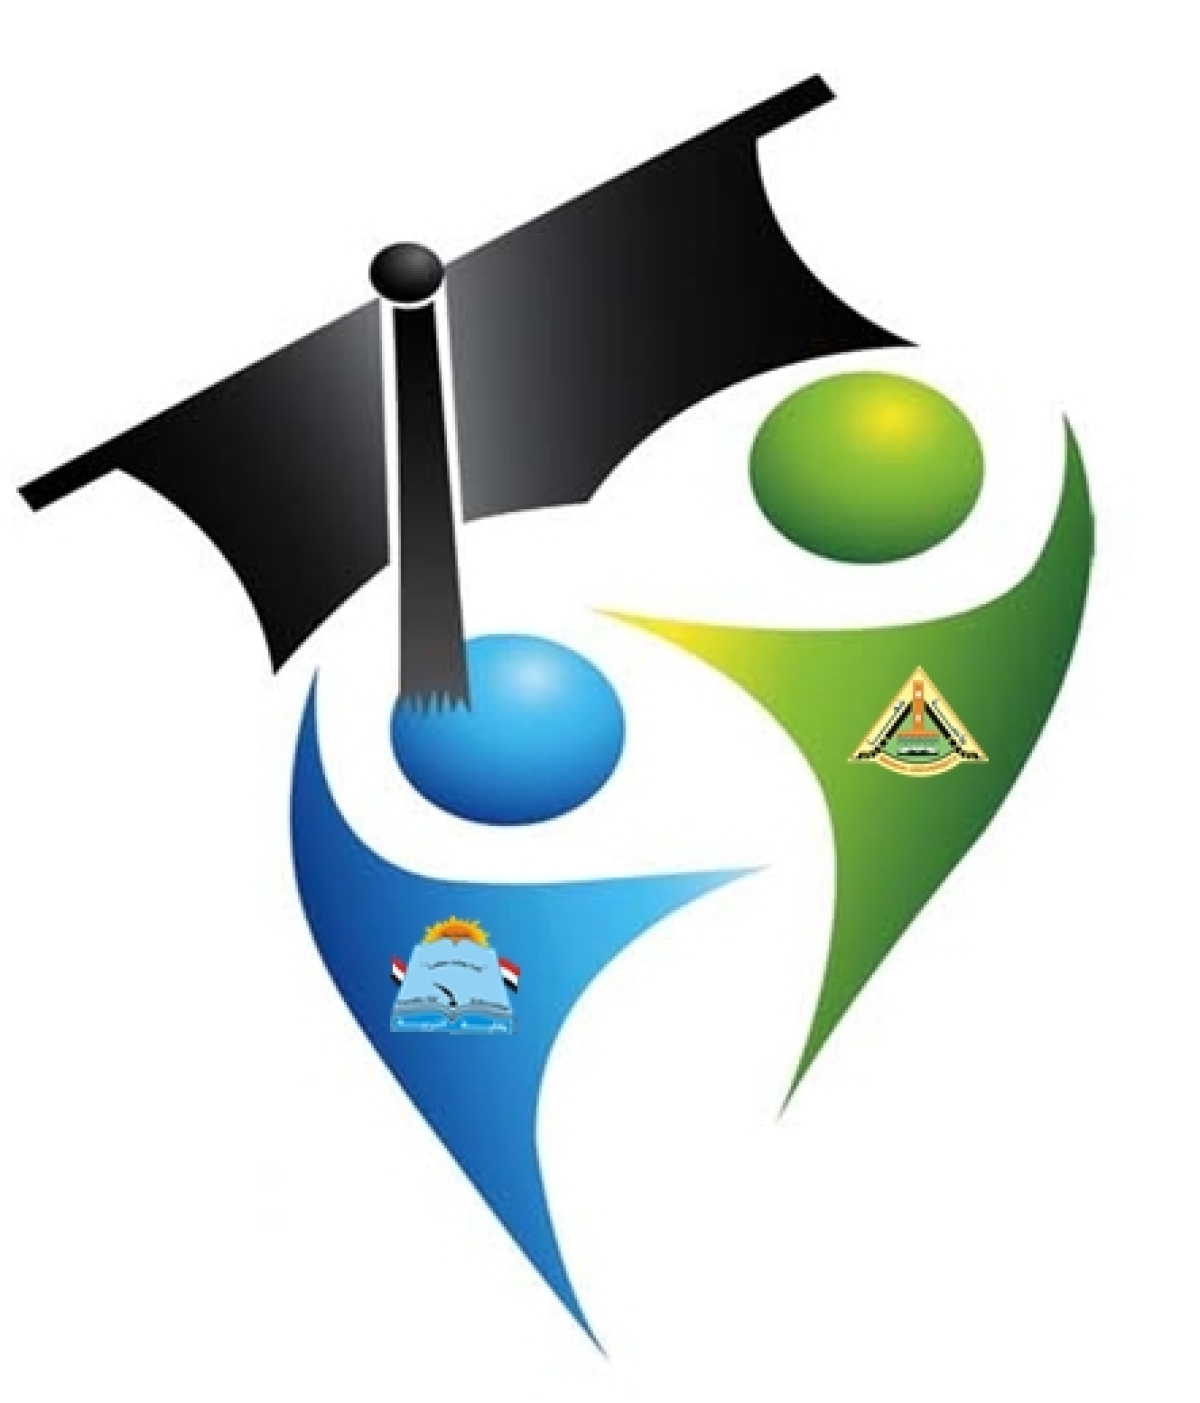 إعلان عن جدول المحاضرات الخاص بالدراسات العليا للعام الجامعي 2022/ 2023  نظام الساعات المعتمدة